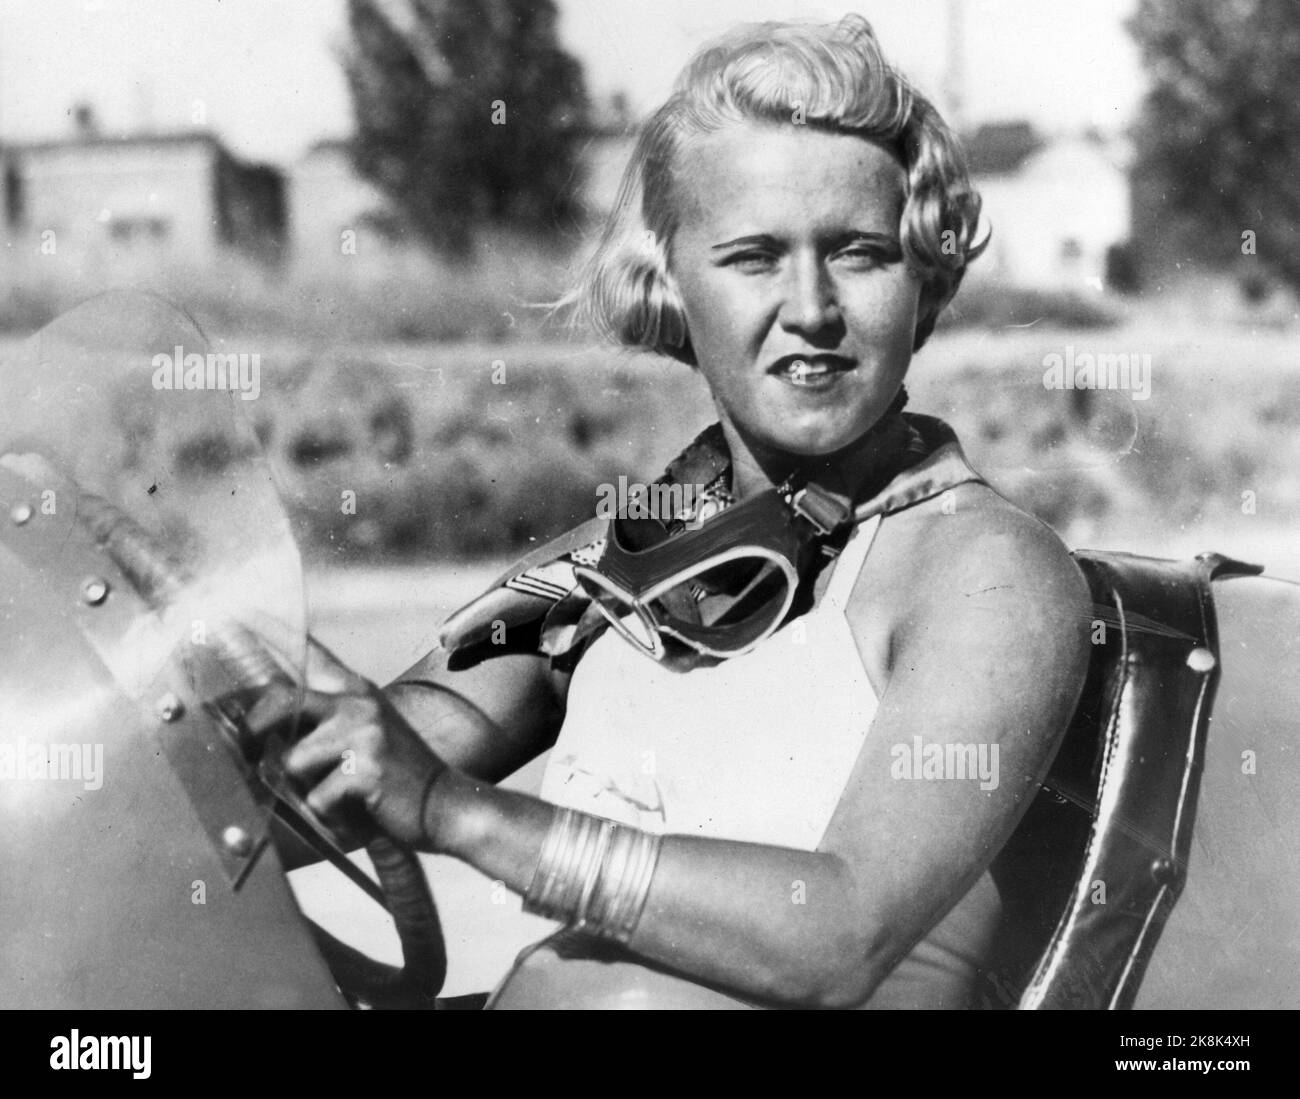 Greta Molander (1908-2002). Pilotos de rally y autor. La foto fue tomada el 6/4-1936 en Los Angeles en el Atlantic Boulevard Stadium antes de una carrera de autos. Ella funciona un offenhauser rápido. Foto: Archivo NTB/NTB Foto de stock